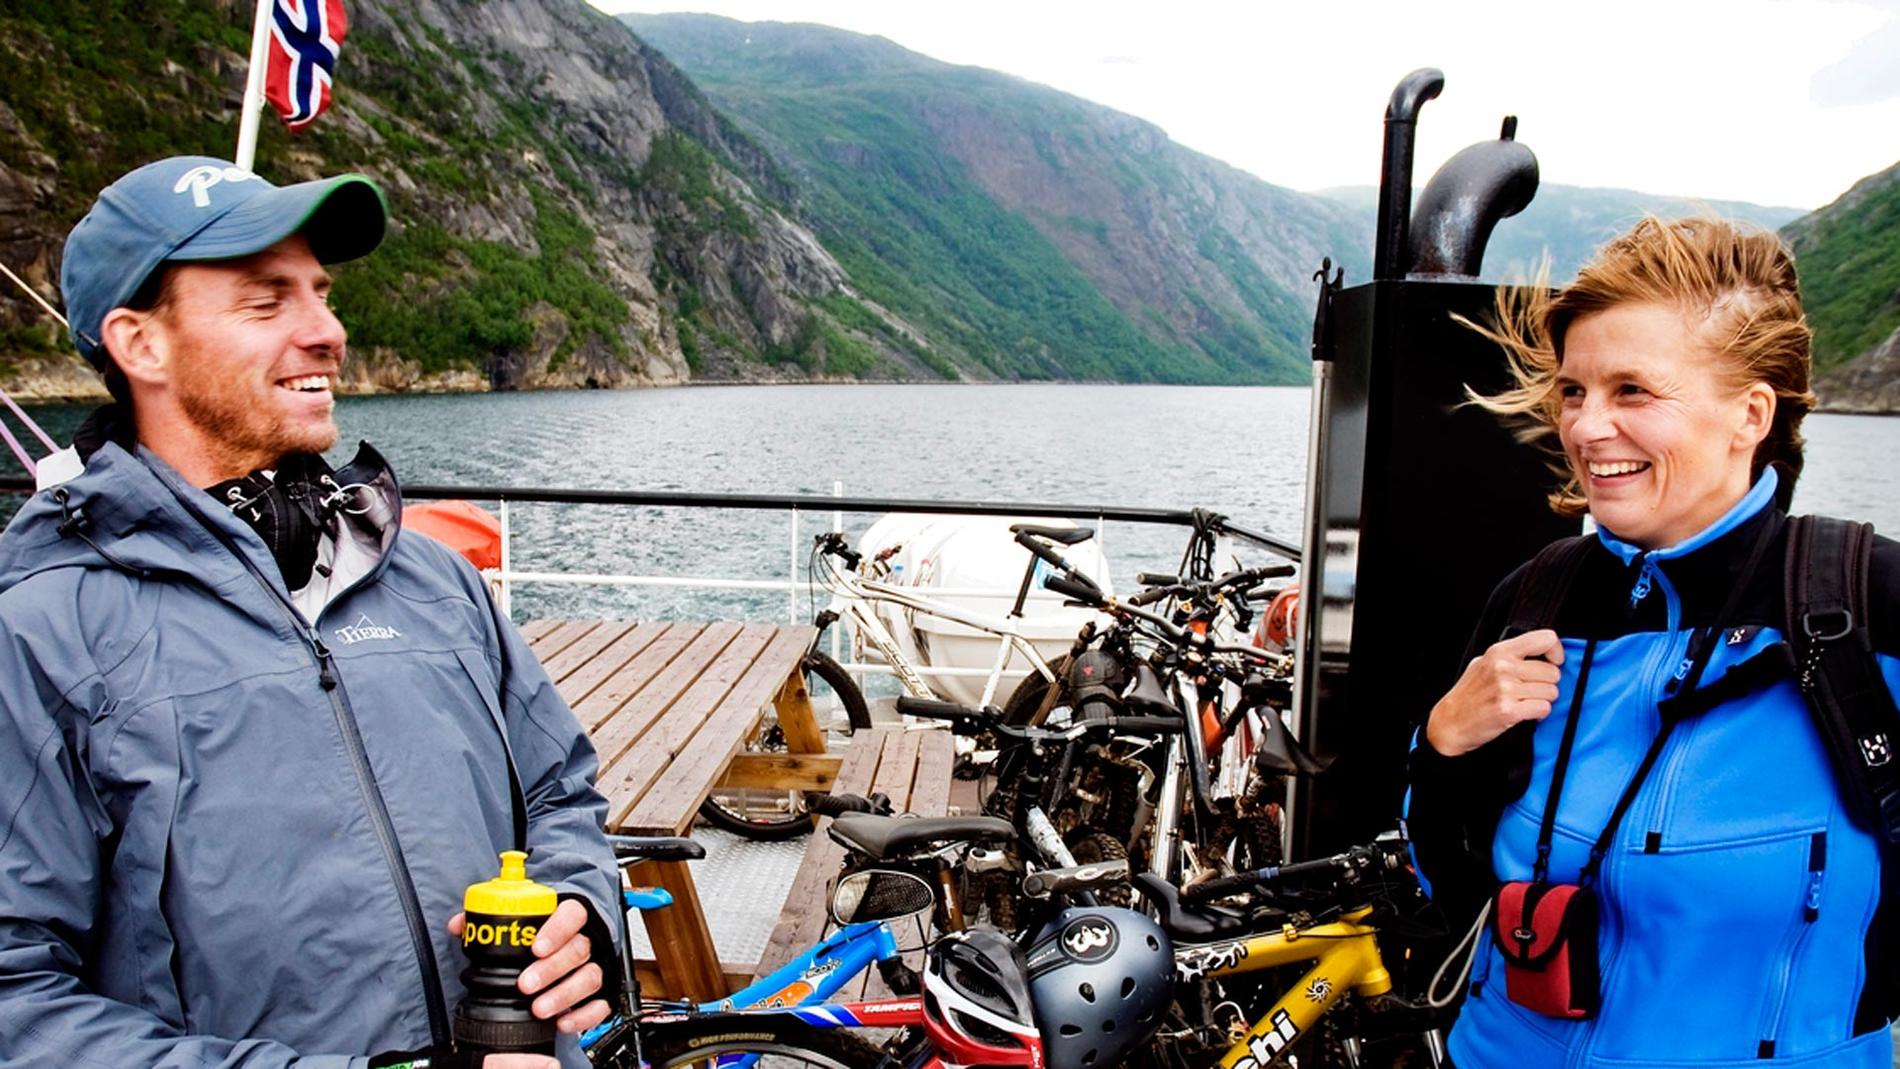 Magnus och Cilla Herling från Linköping kan pusta ut på båten mot Narvik. Deras söner har just gjort fjällcykeldebut och familjen hann precis med sista avgången för veckan.